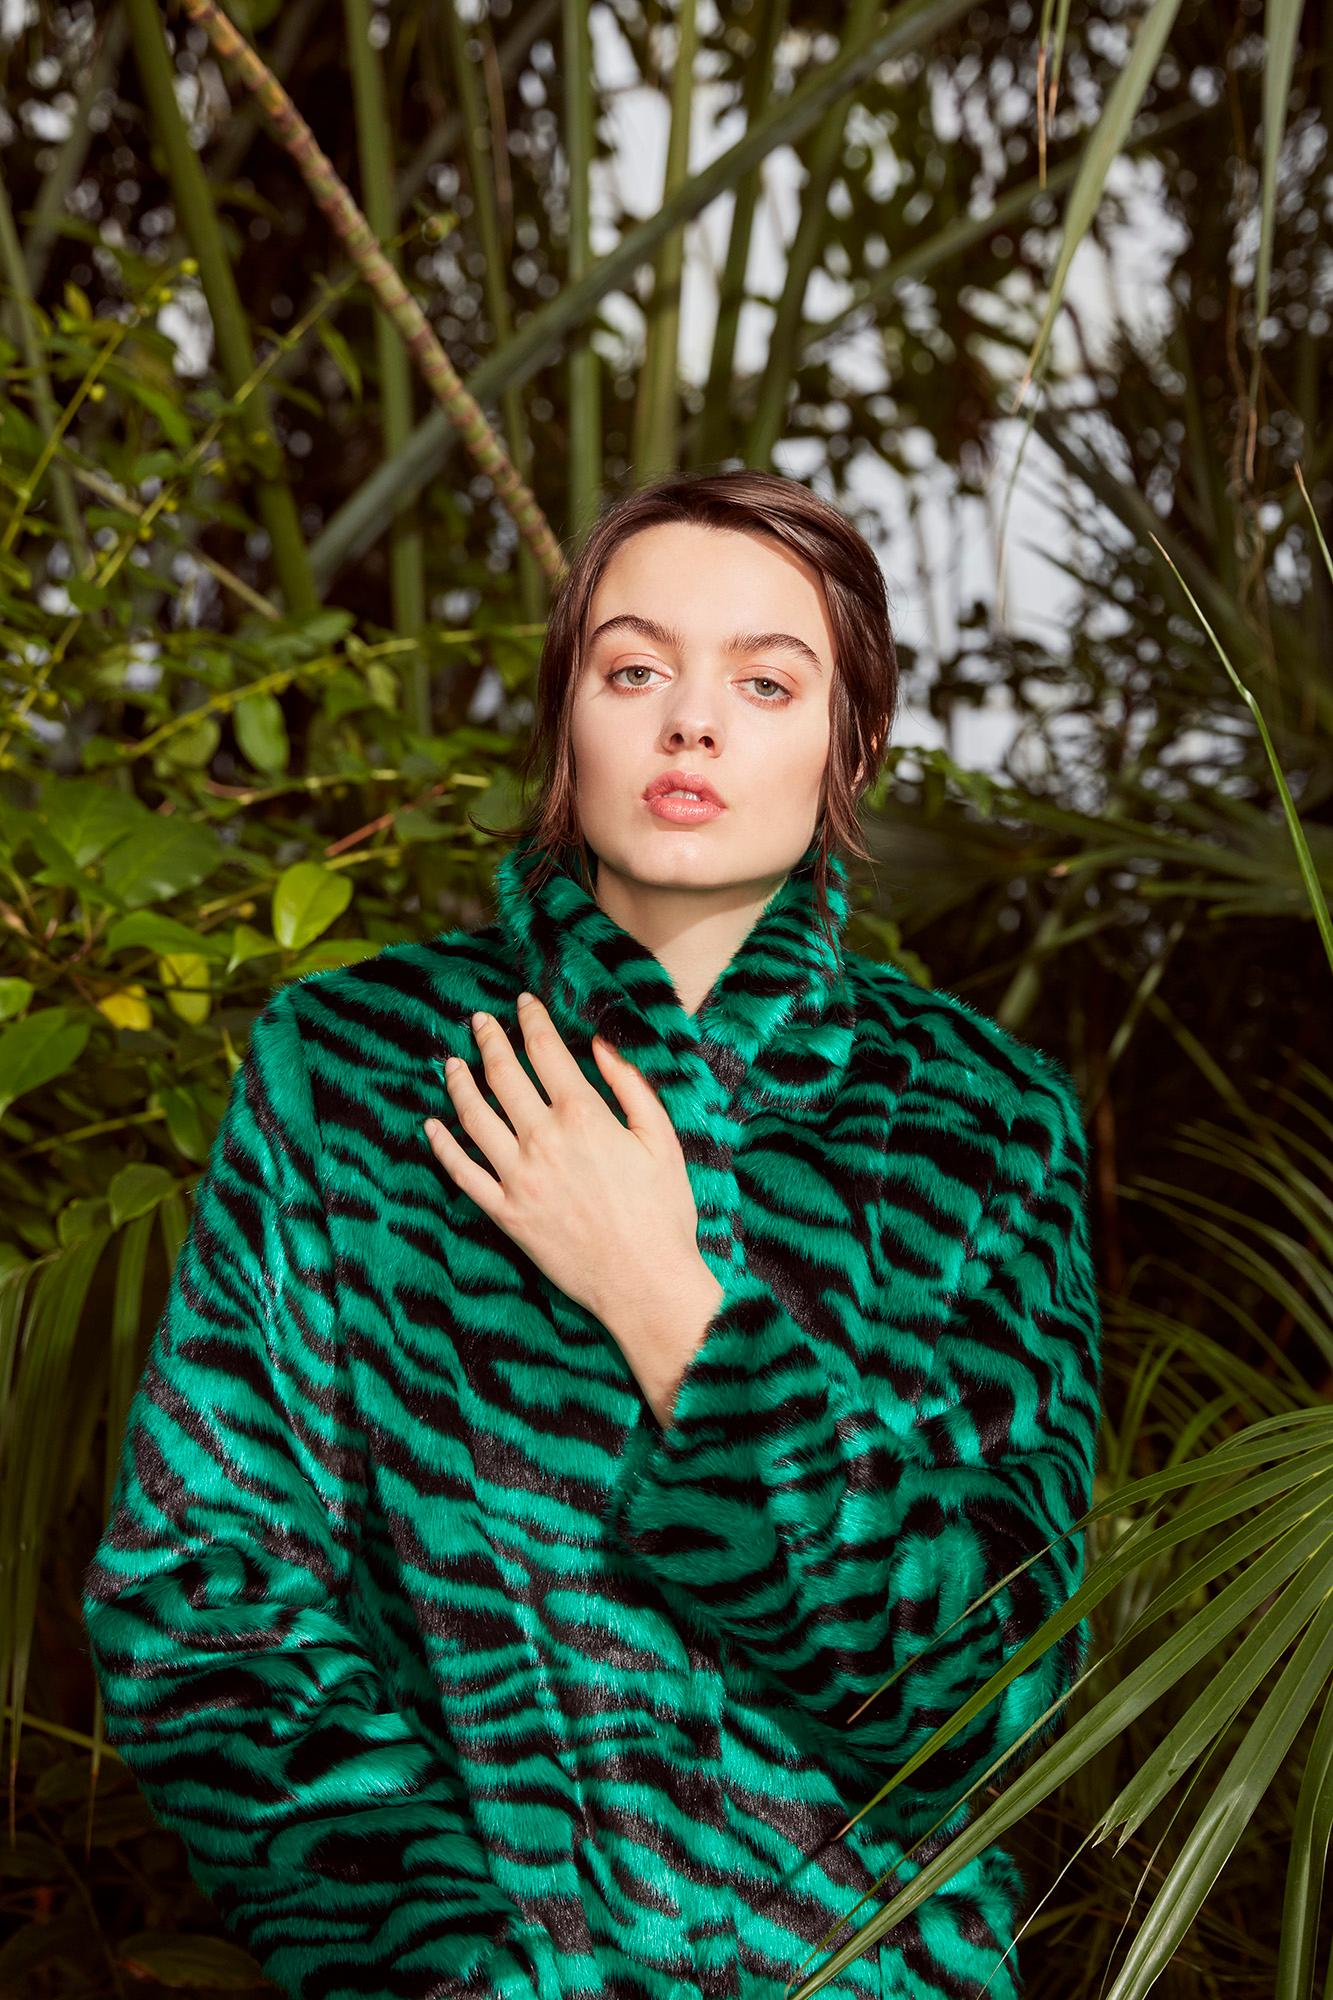 Verheyen London Esmeralda Faux Fur Coat in Emerald Green Zebra Print size uk 10 For Sale 5